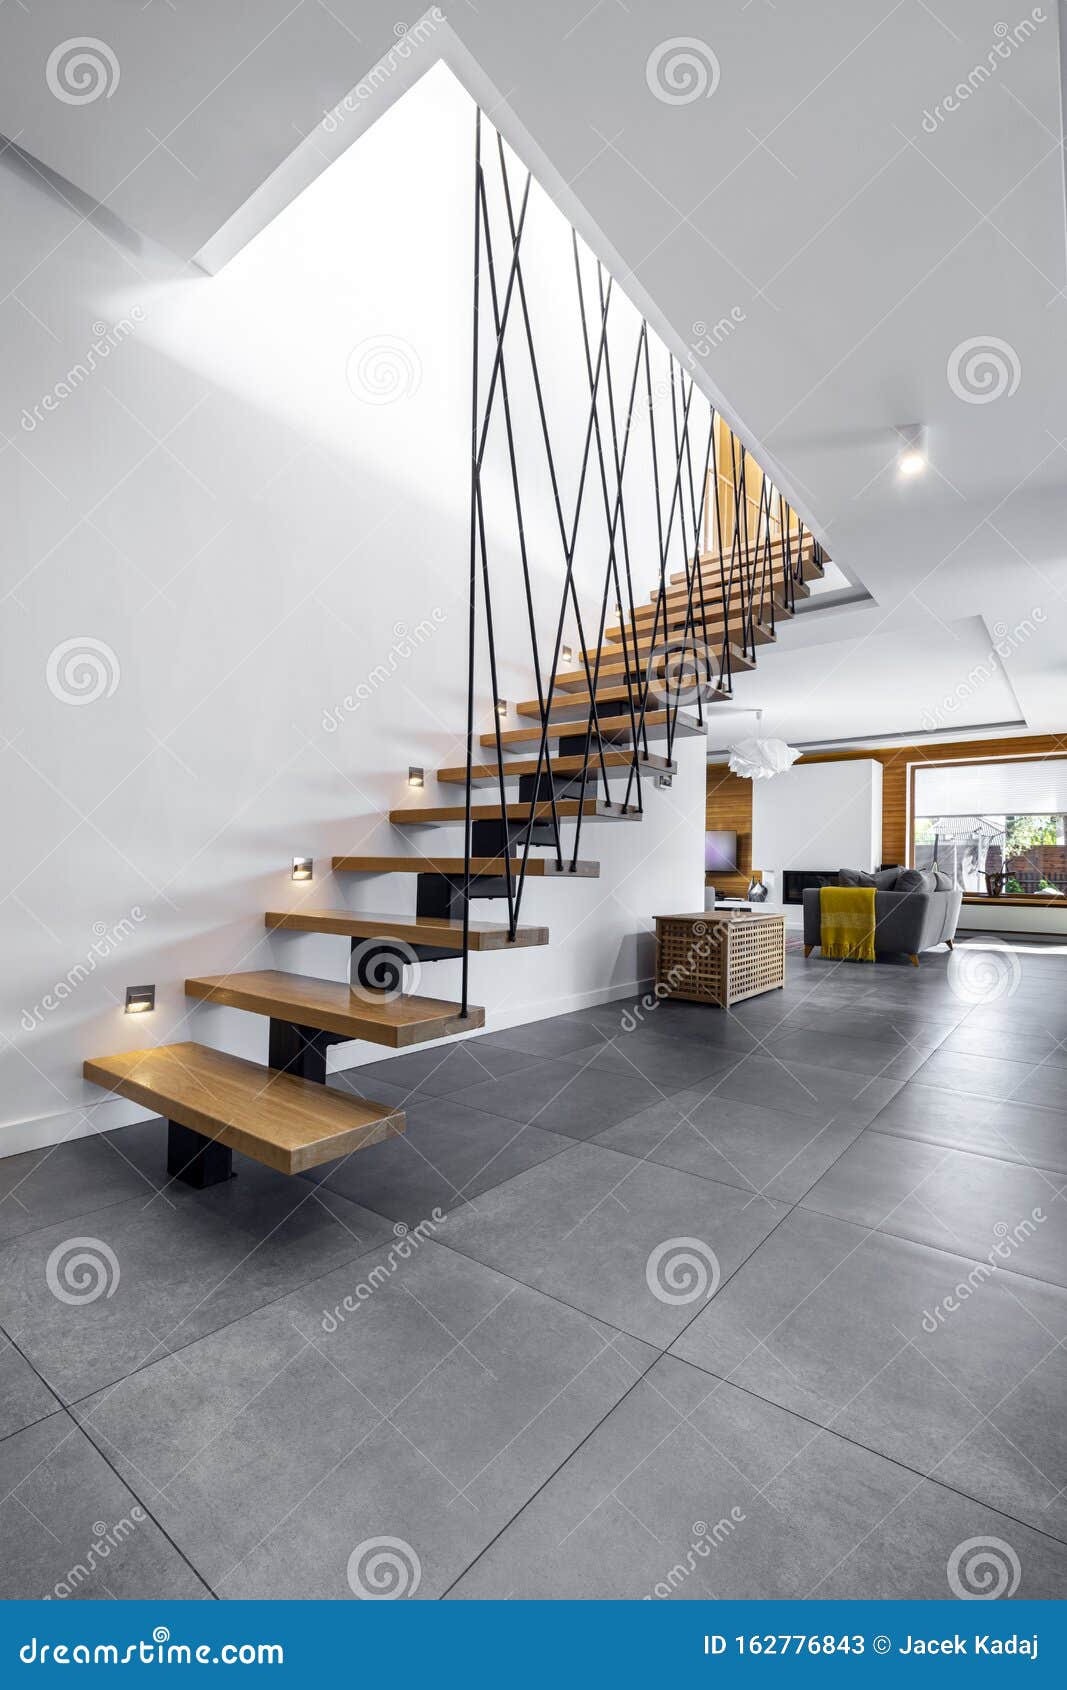 modern interior  - stairs